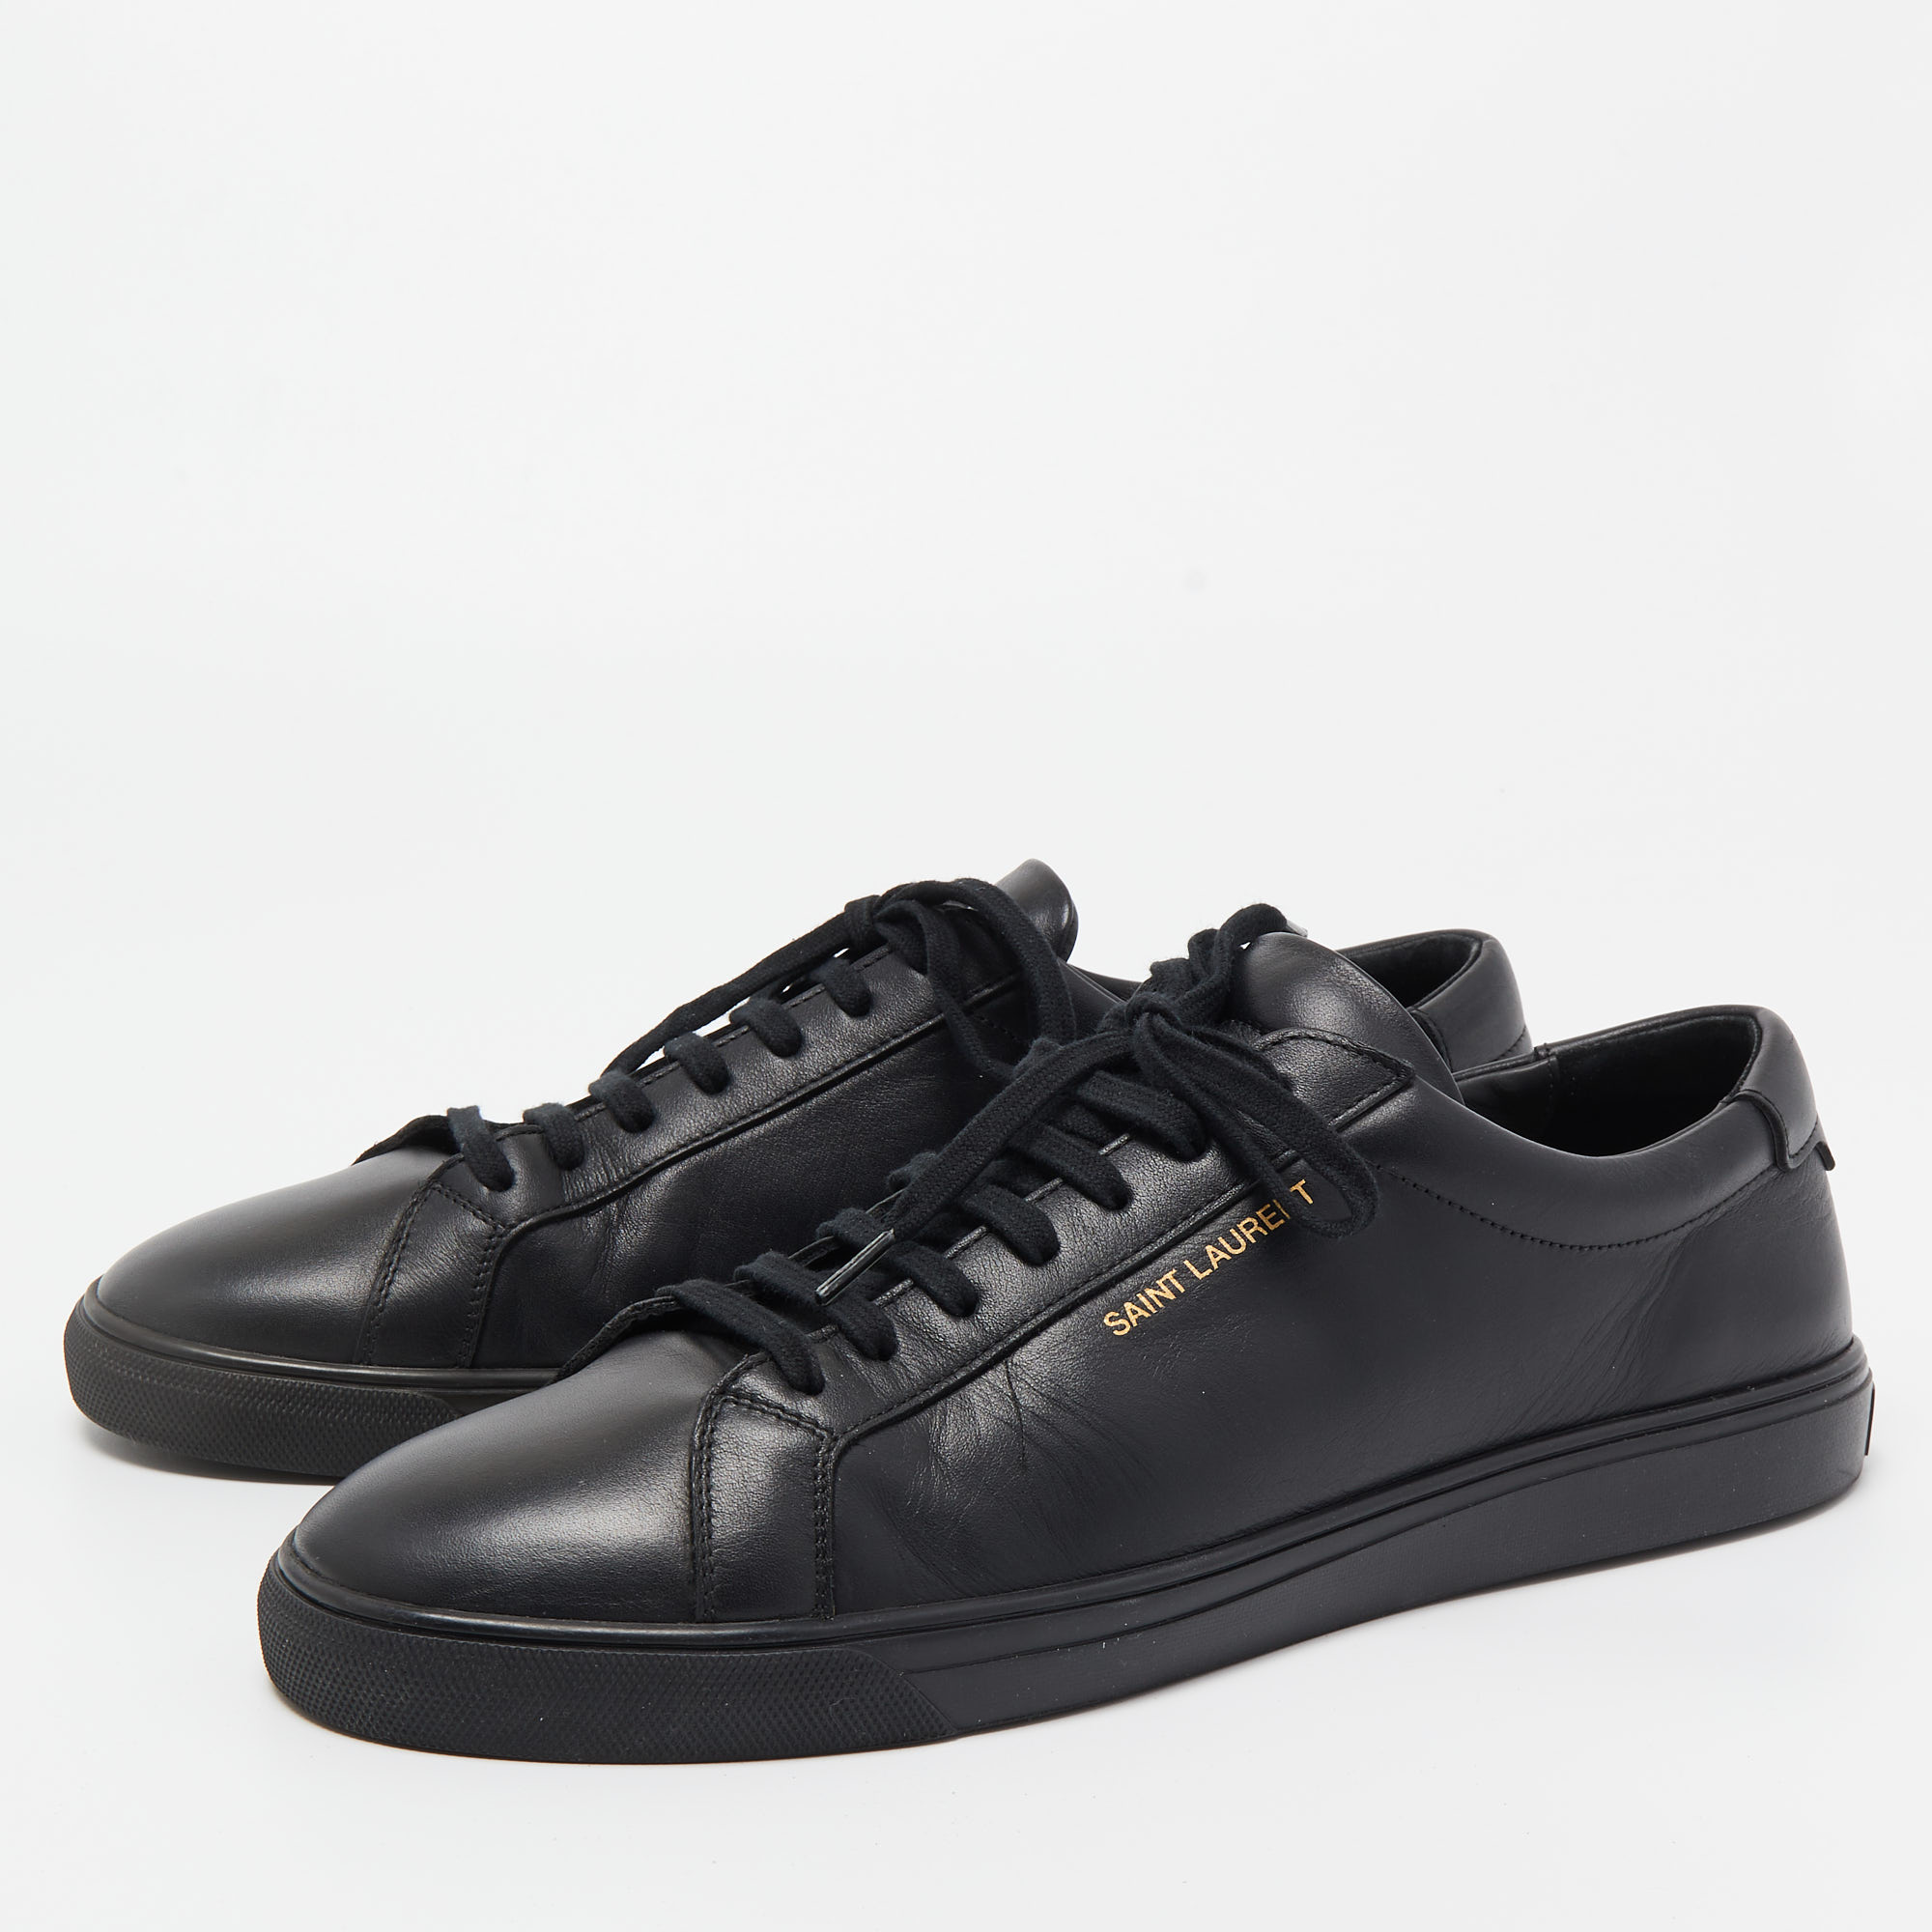 

Saint Laurent Paris Black Leather Andy Low Top Sneakers Size